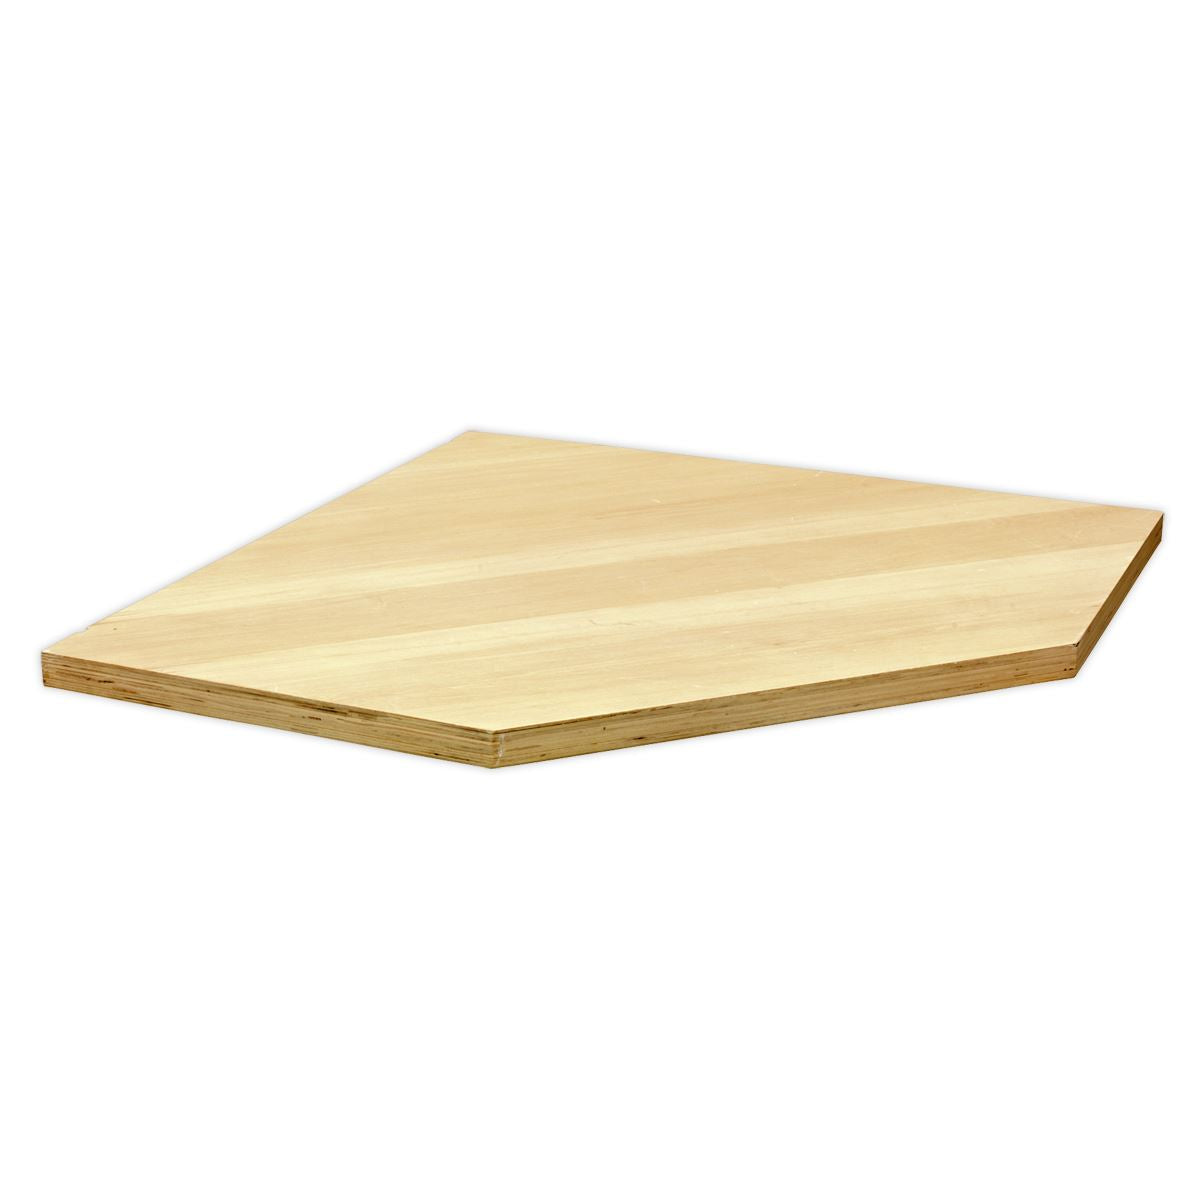 Sealey Superline Pro Pressed Wood Worktop for Modular Corner Cabinet 865mm